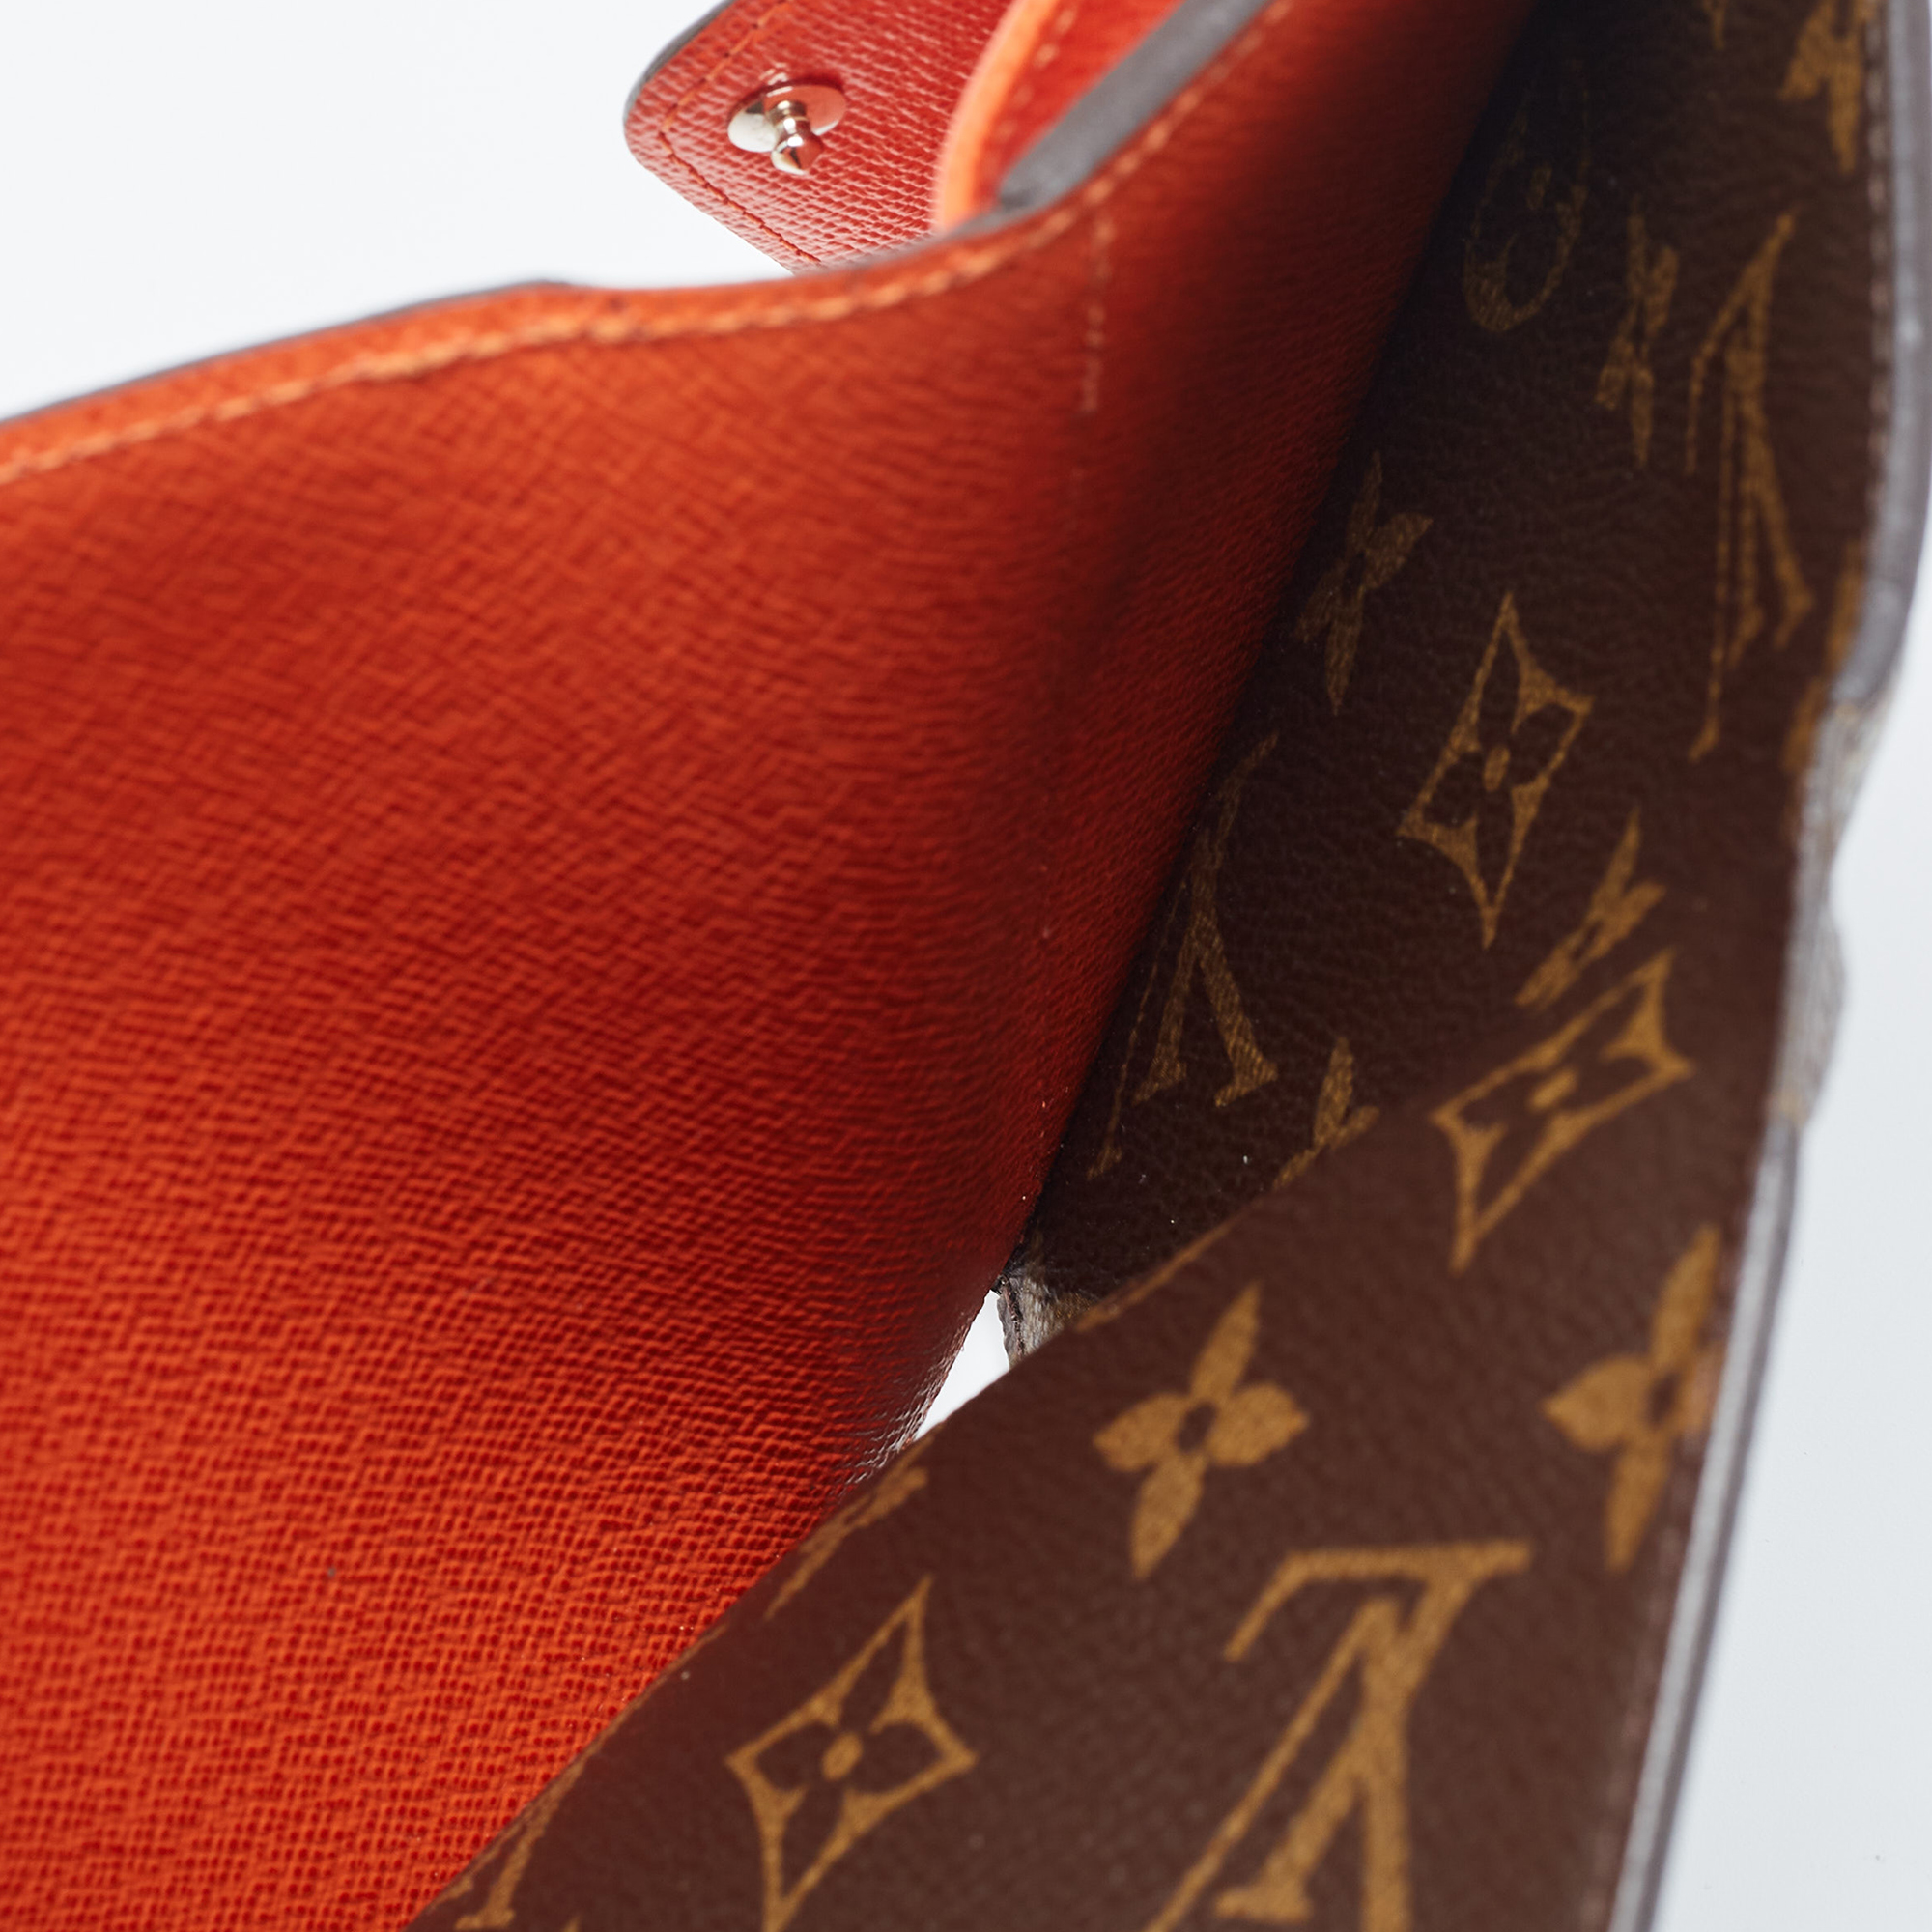 Louis Vuitton Piment Epi Leather And Monogram Canvas Marie-Lou Compact Wallet